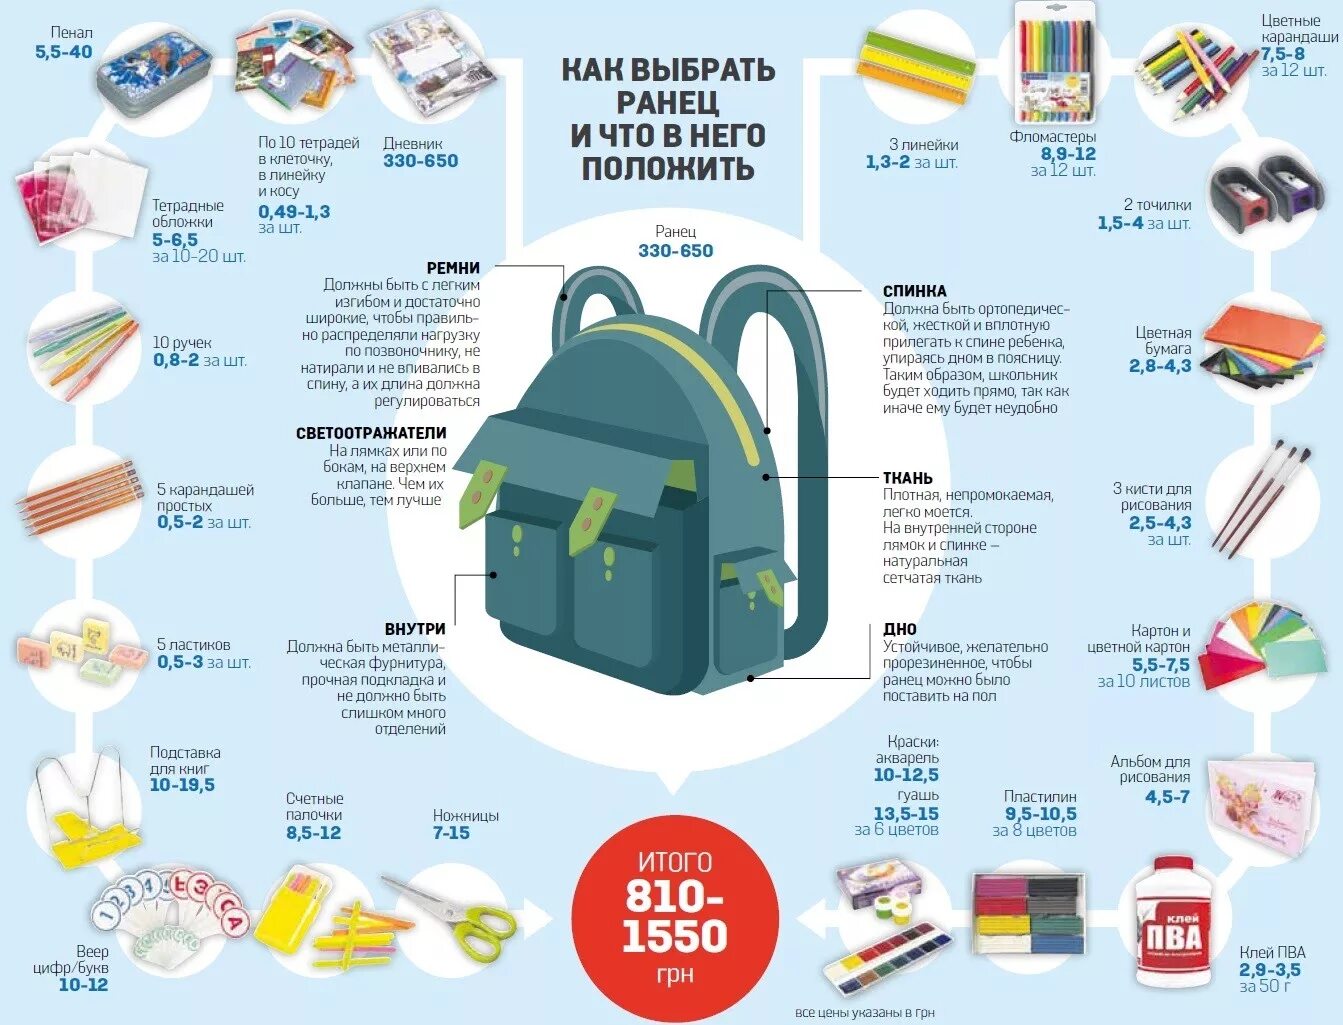 Что нужно купить в 5. Инфографика рюкзак. .Нужные вещи для ученика. Школьный рюкзак инфографика. Школьный рюкзак инфографика как выбирать.